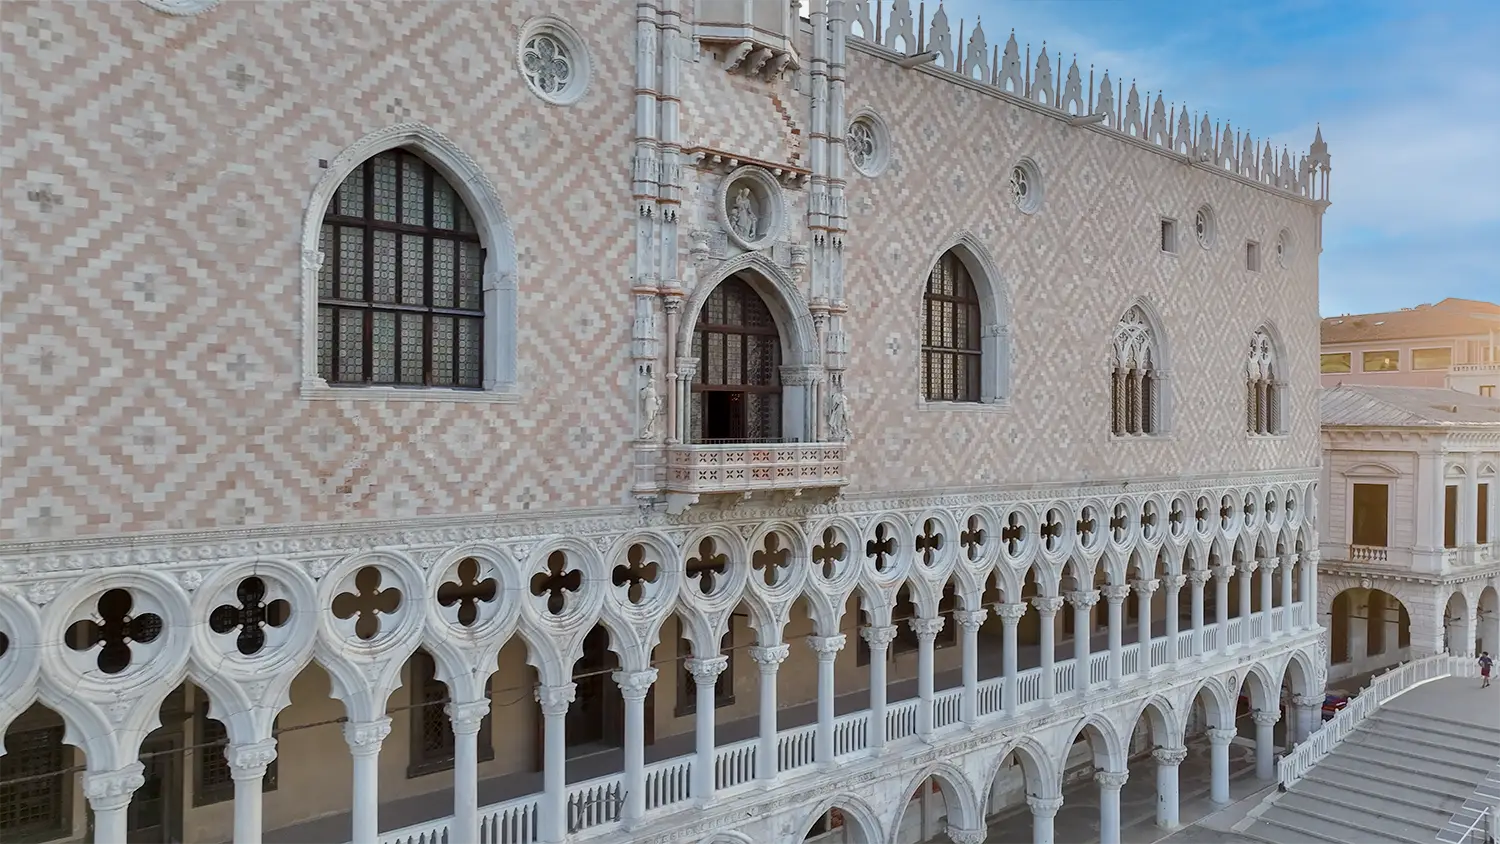 Ripresa aerea con drone della facciata di Palazzo Ducale a Venezia. Lato prospiciente il Canale della Giudecca.